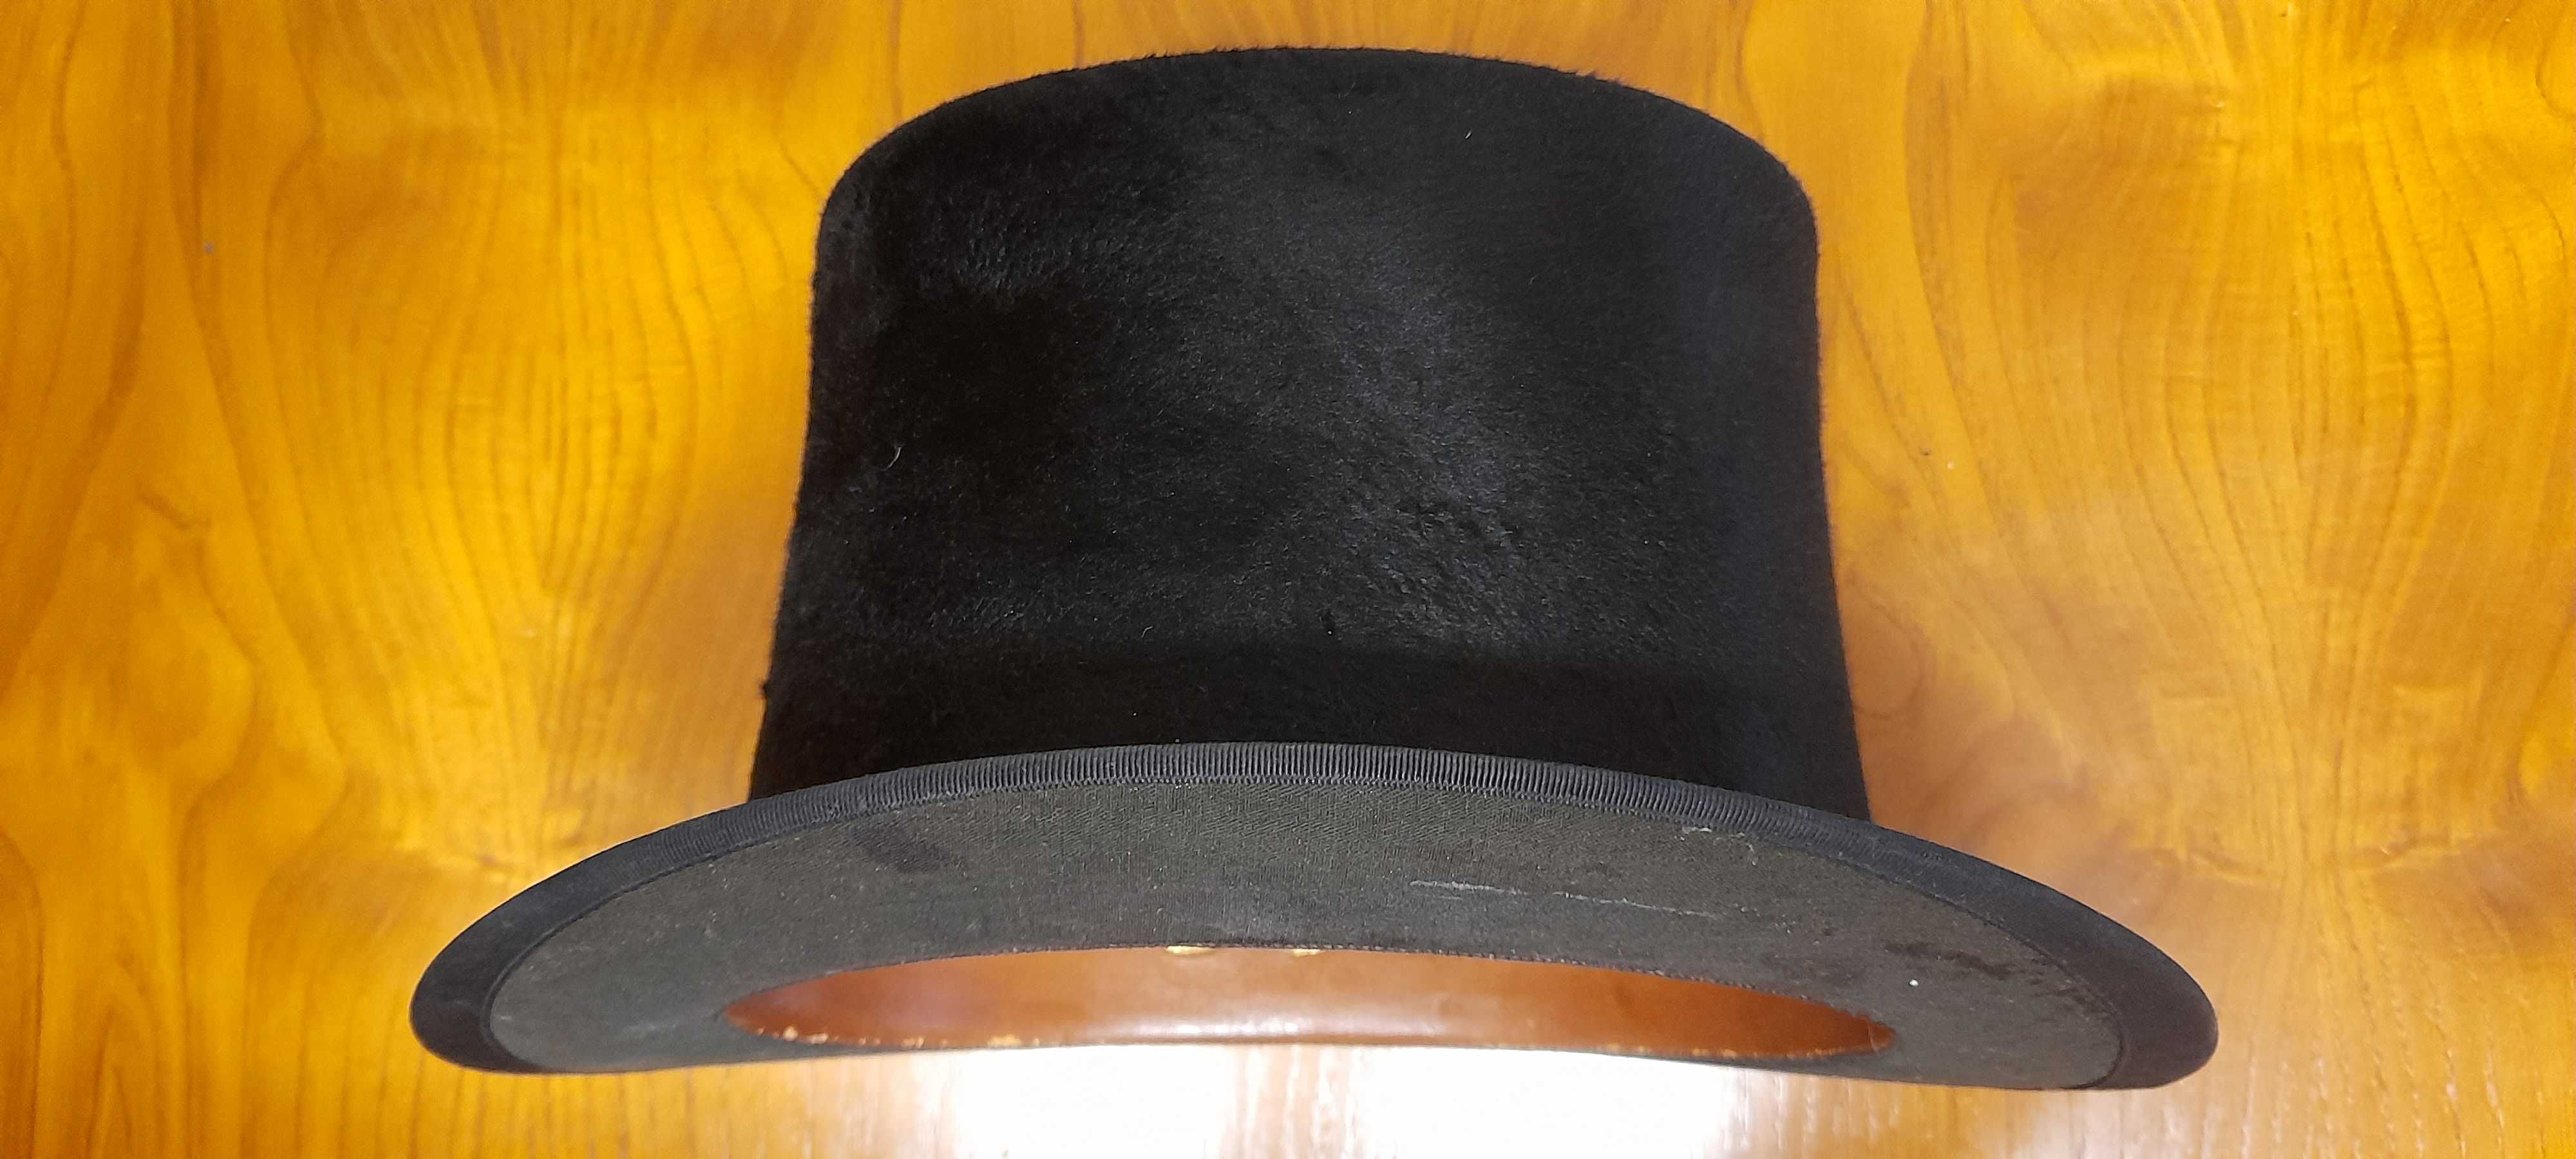 Conjunto de chapéus antigos